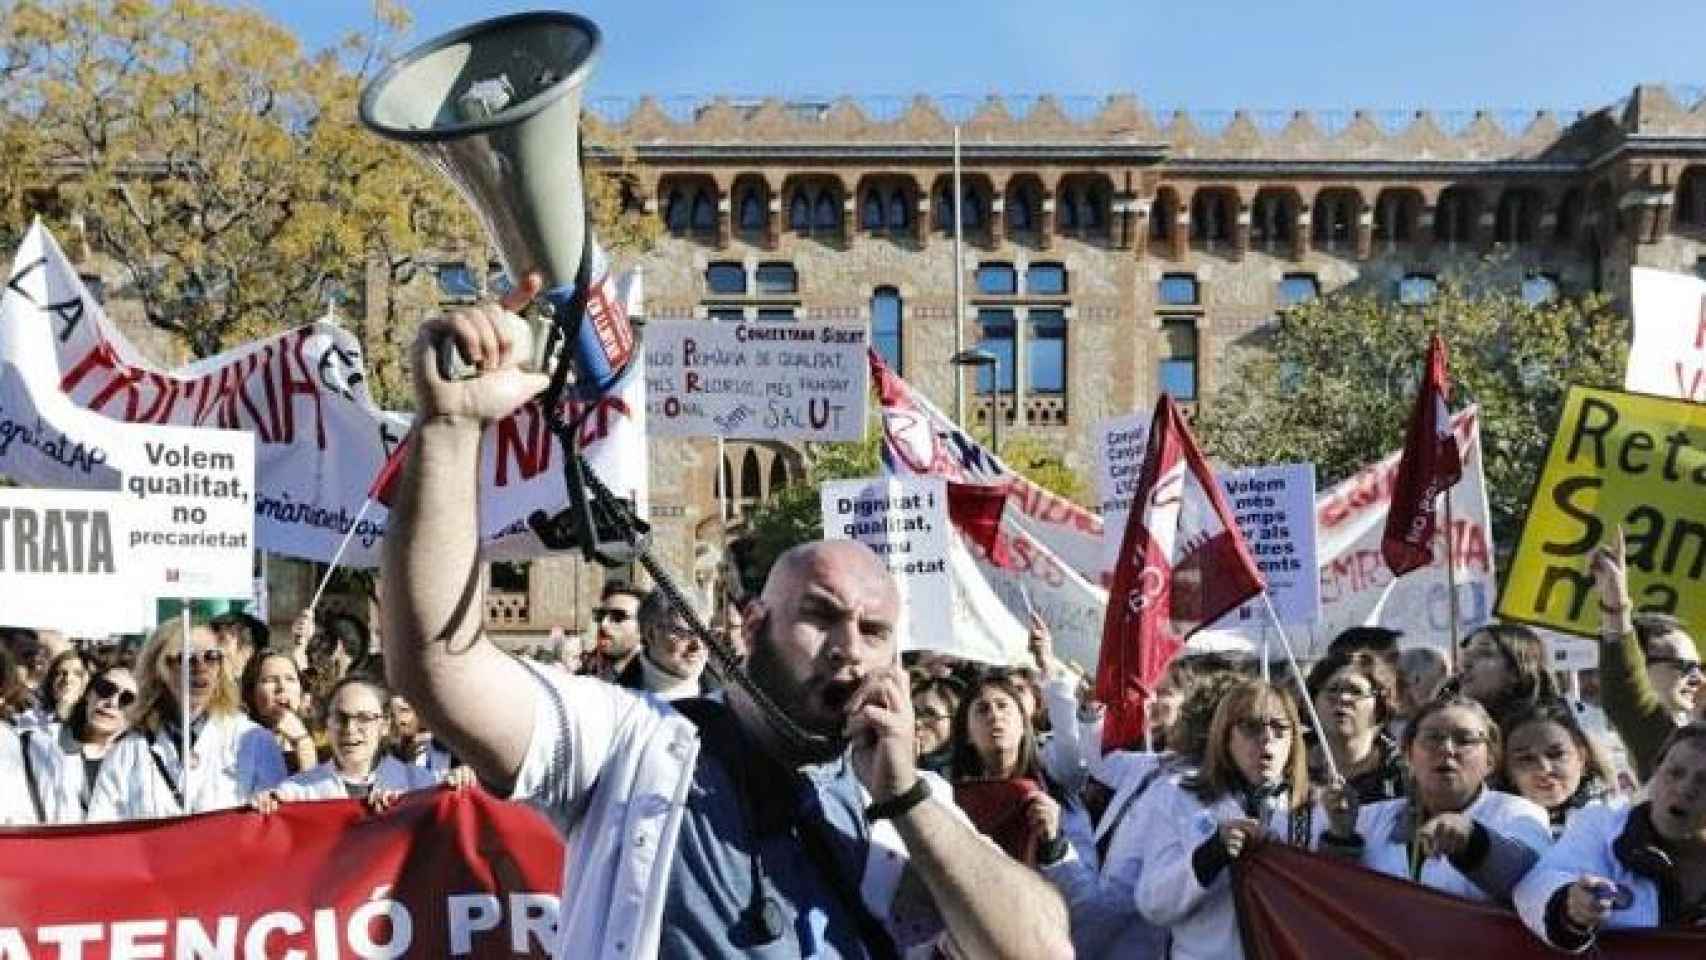 Imagen de las protestas de los médicos de atención primaria en Cataluña, los primeros trabajadores públicos que fueron a la huelga por sus condiciones laborales / EFE